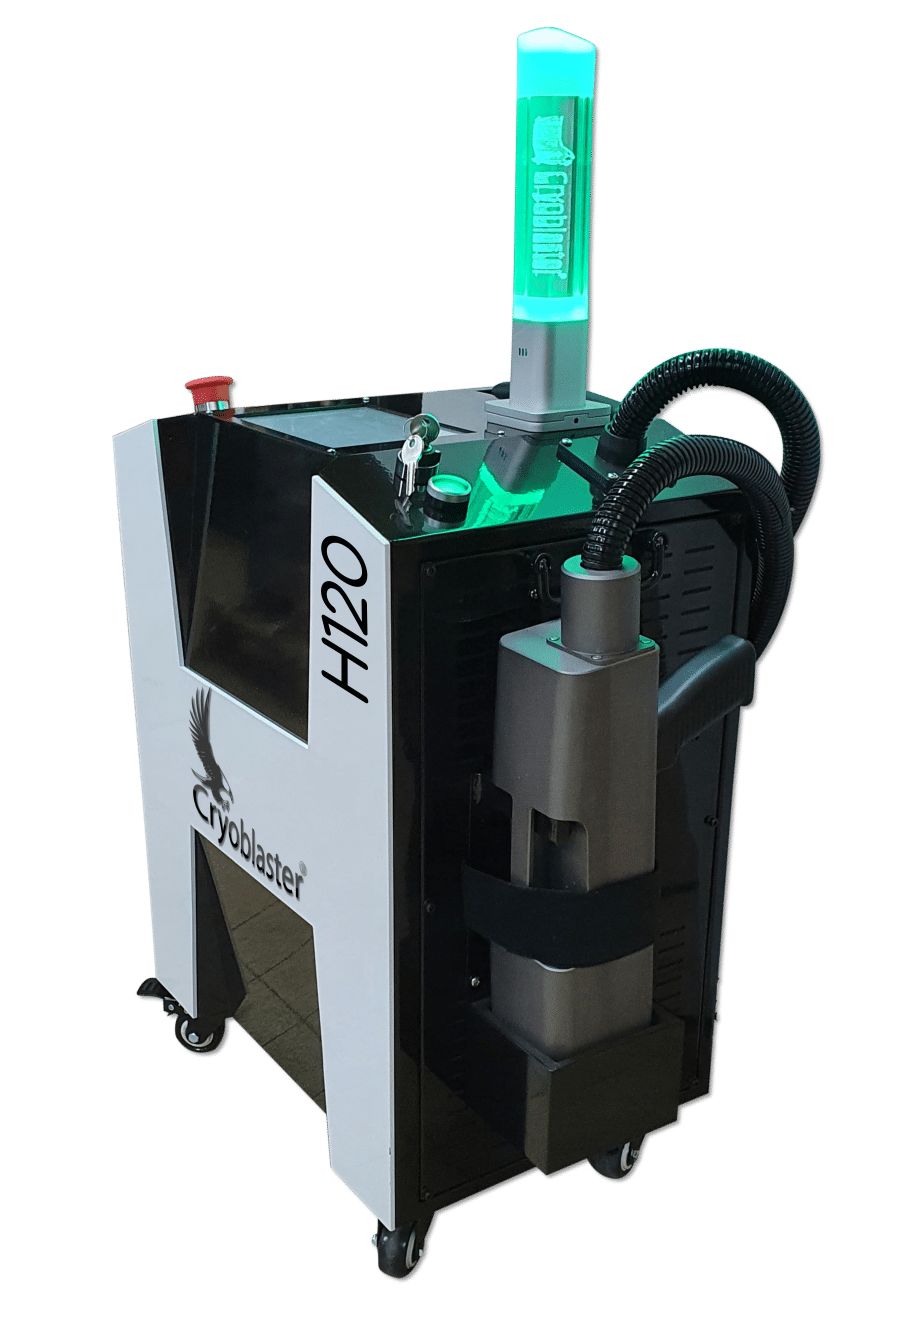 H60 Nettoyeur Laser pour Décapage Industriel